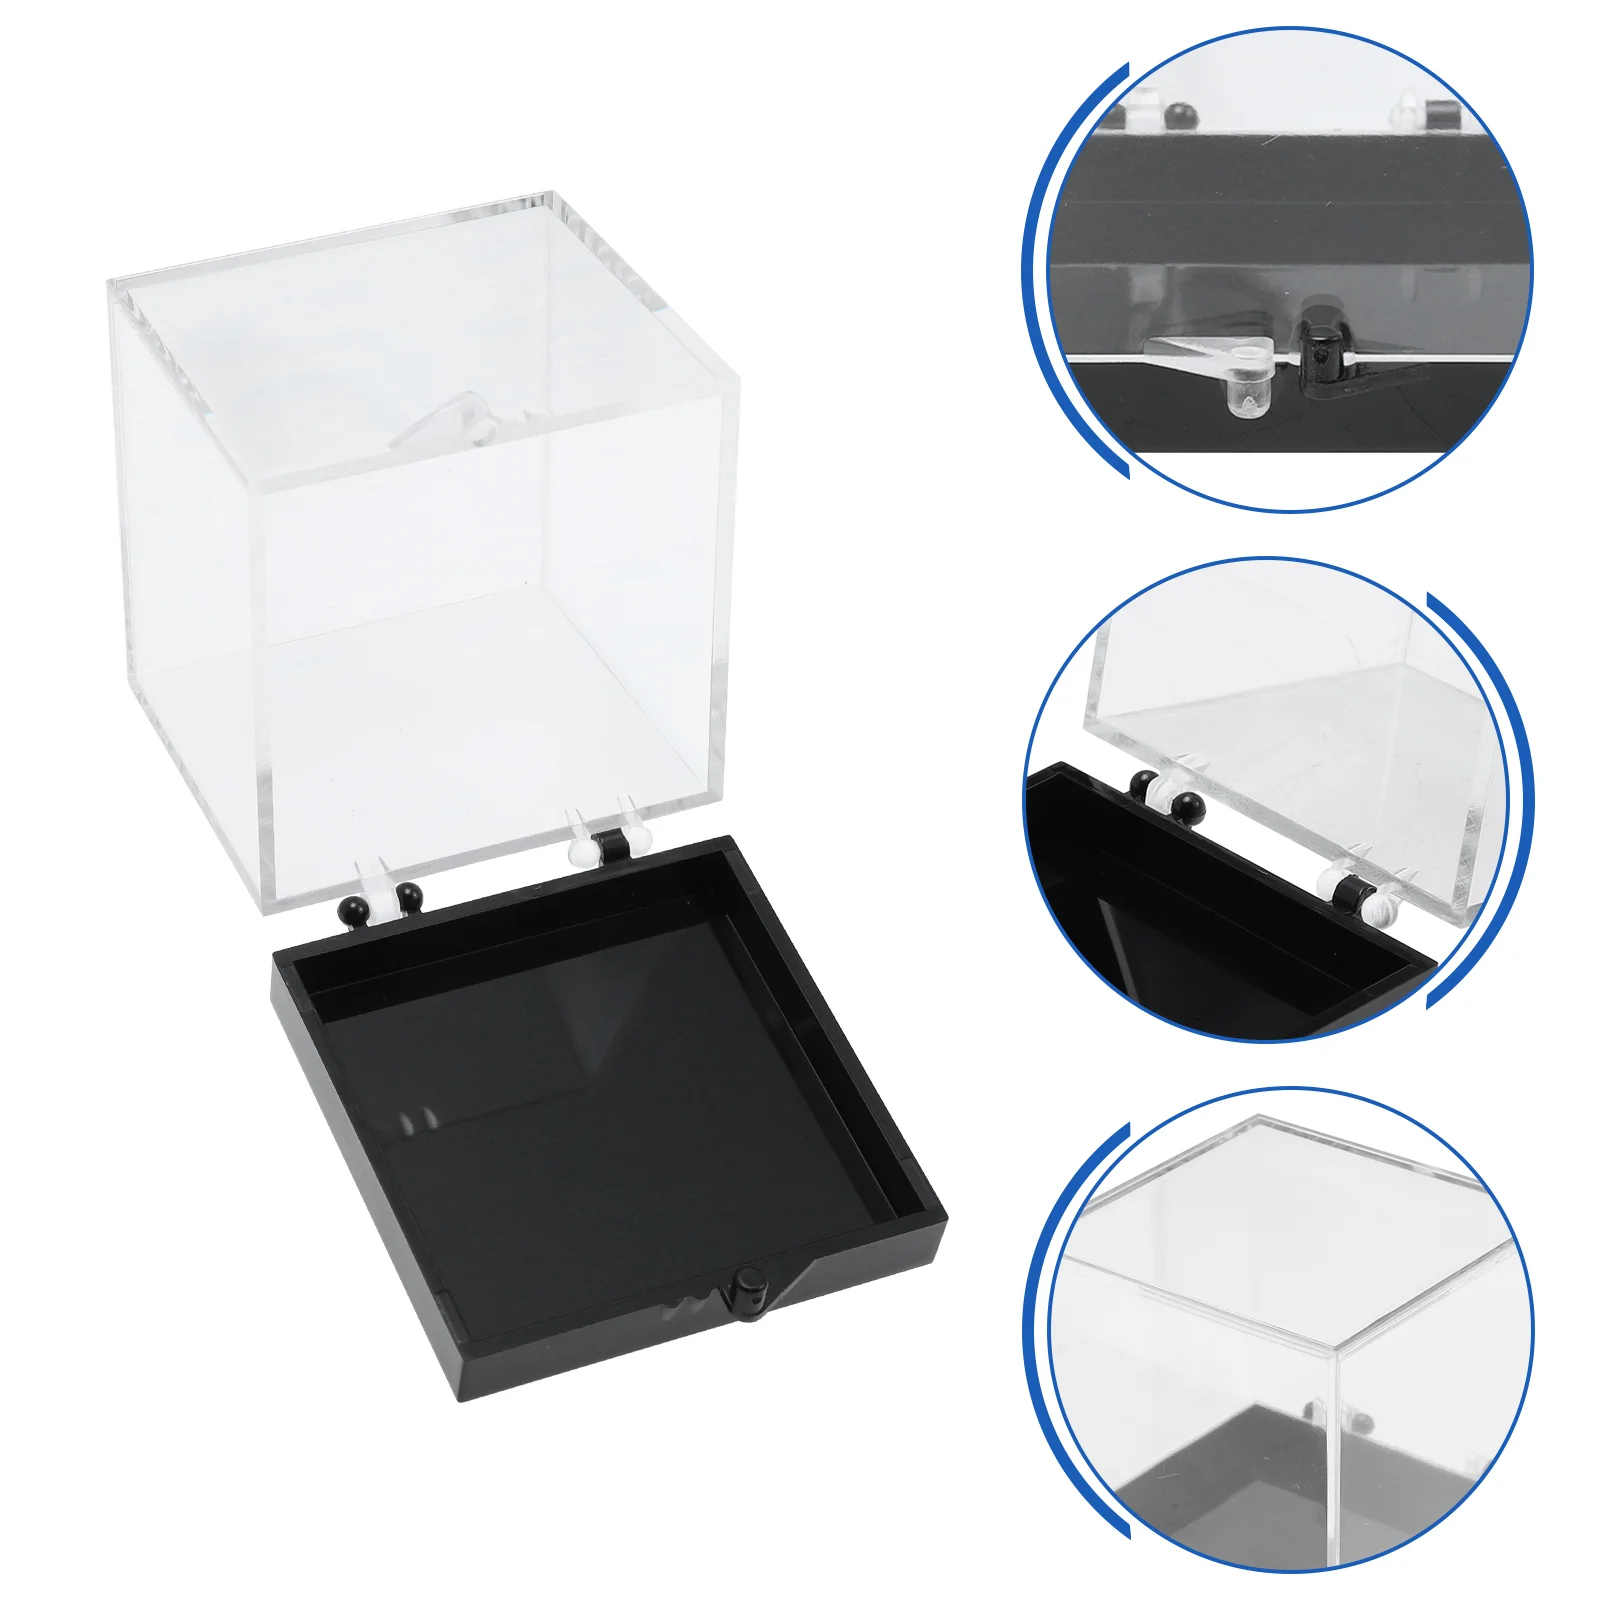 

8 шт. минеральный Стандартный Витринный ящик, прозрачный образец, практичный пластиковый контейнер для статуэтки